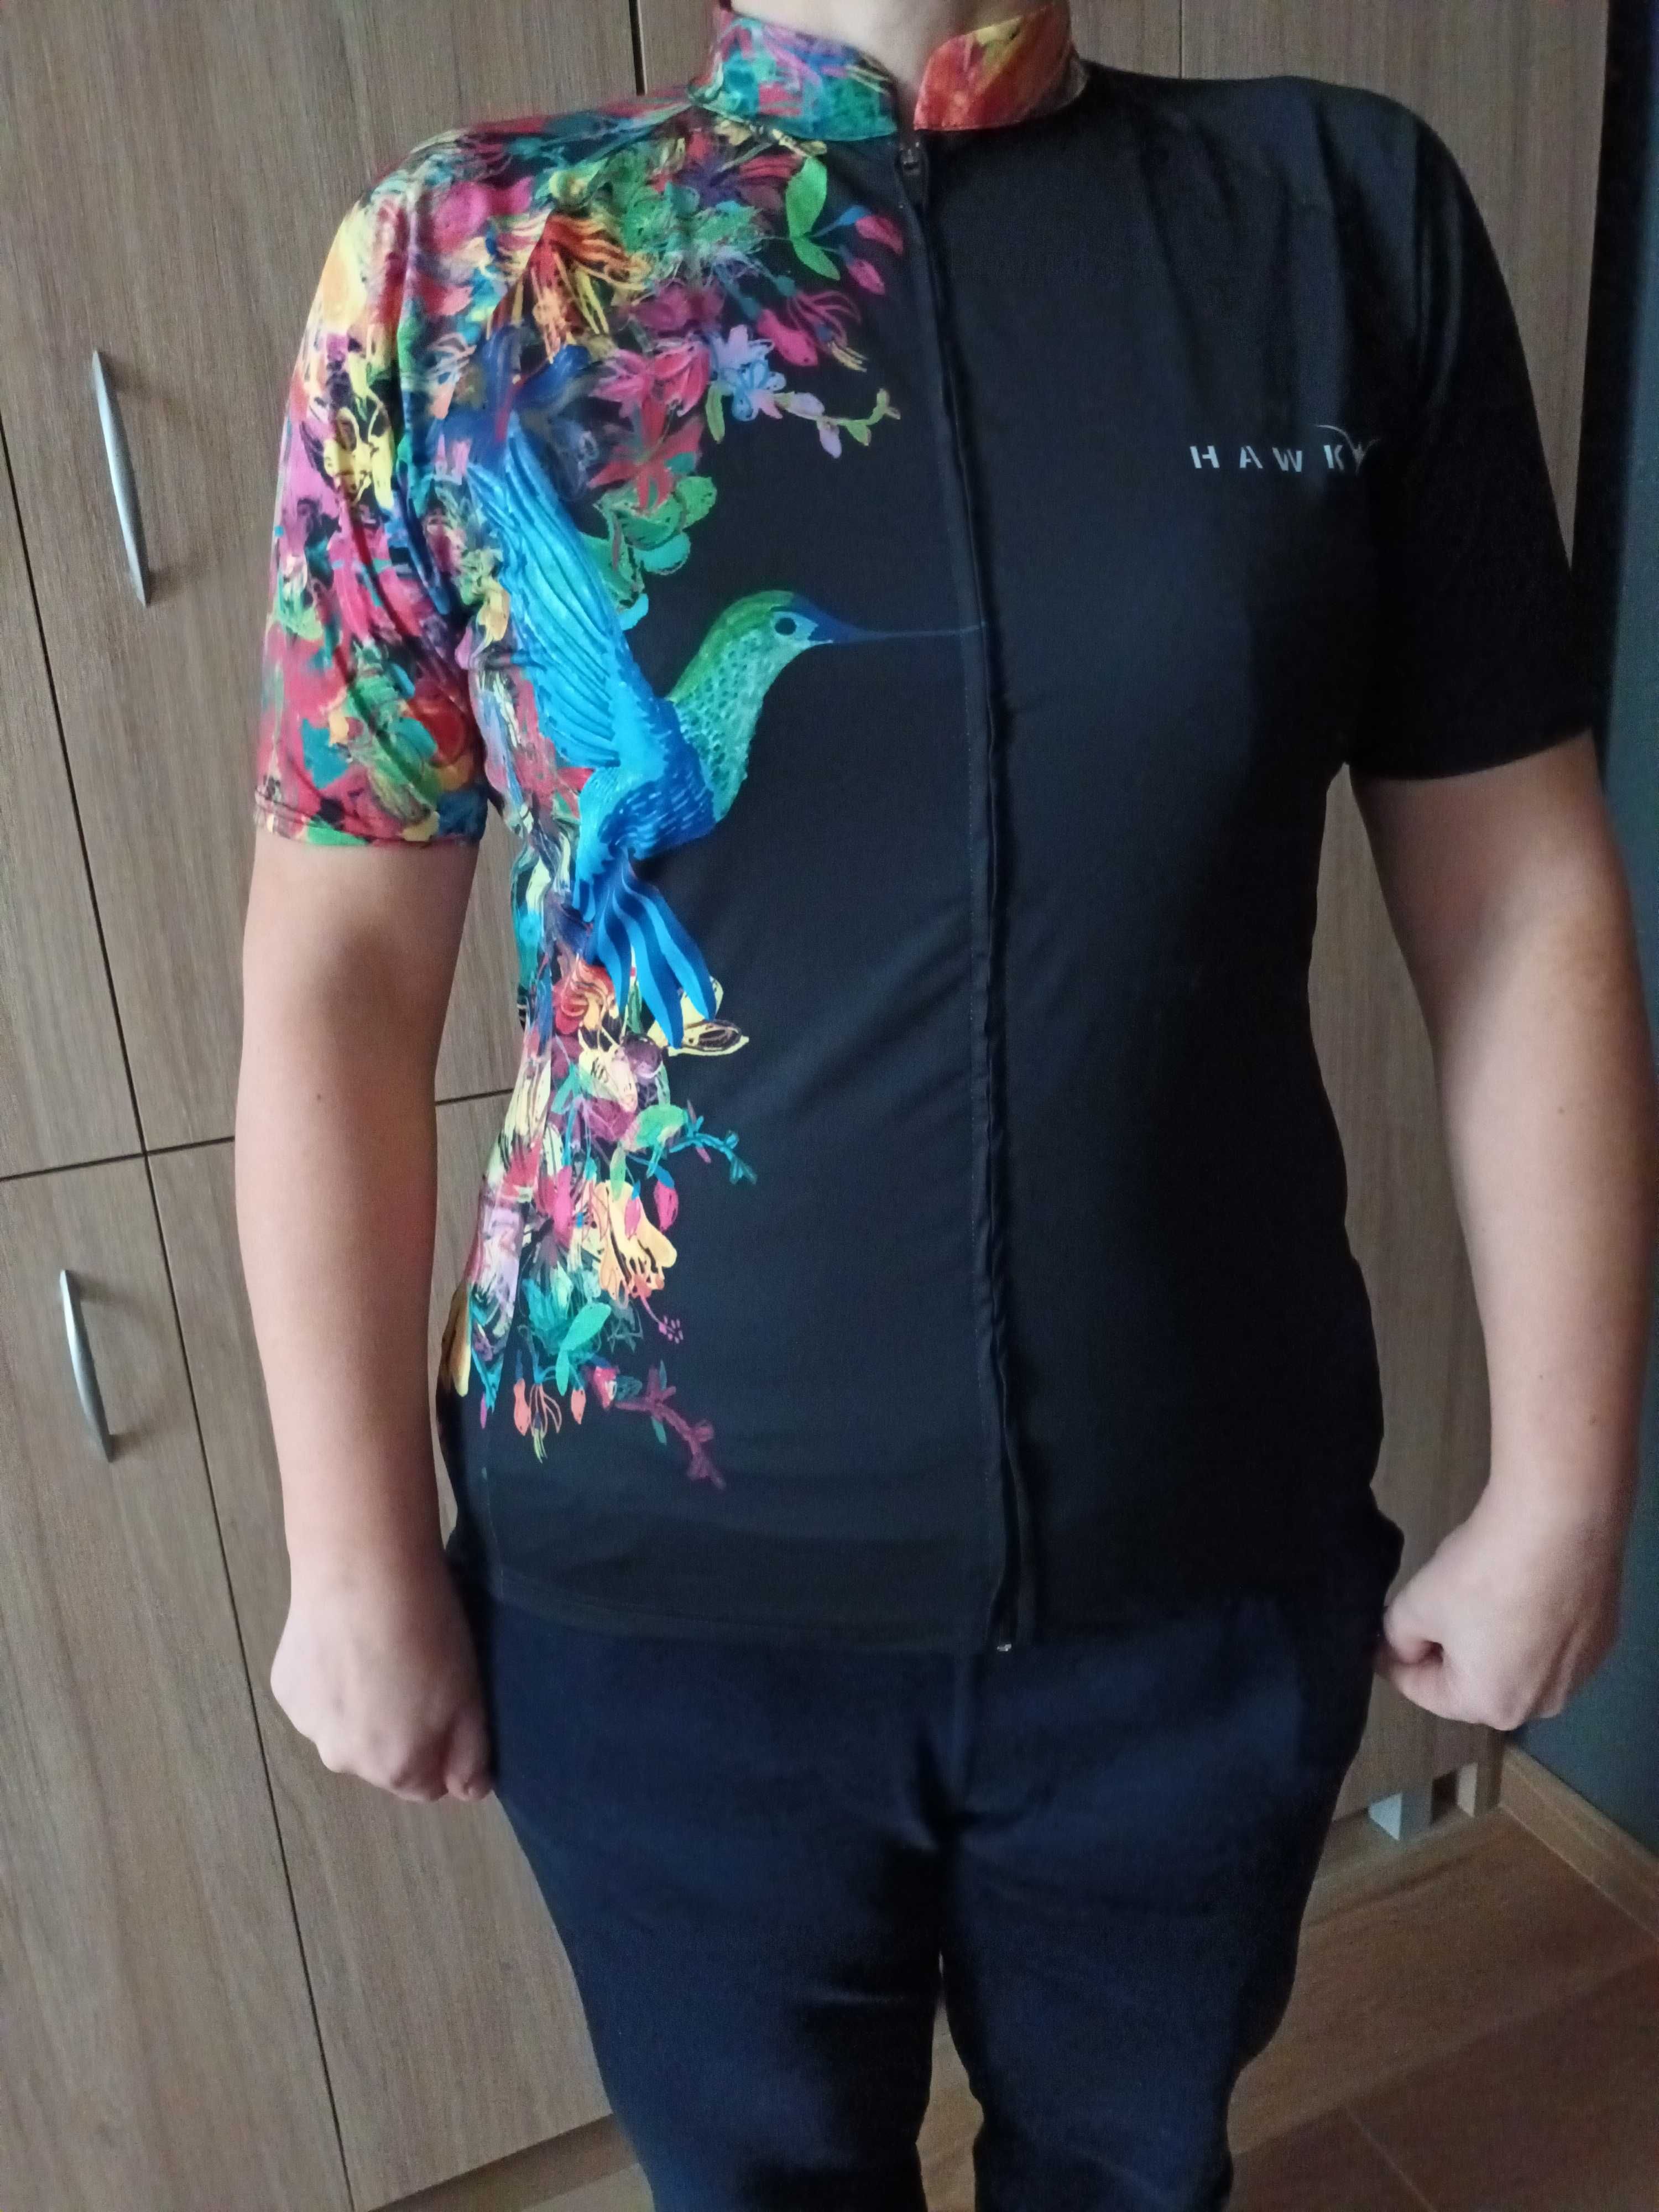 Damska koszulka rowerowa rozm,XL firmy Hawky z kolibrem